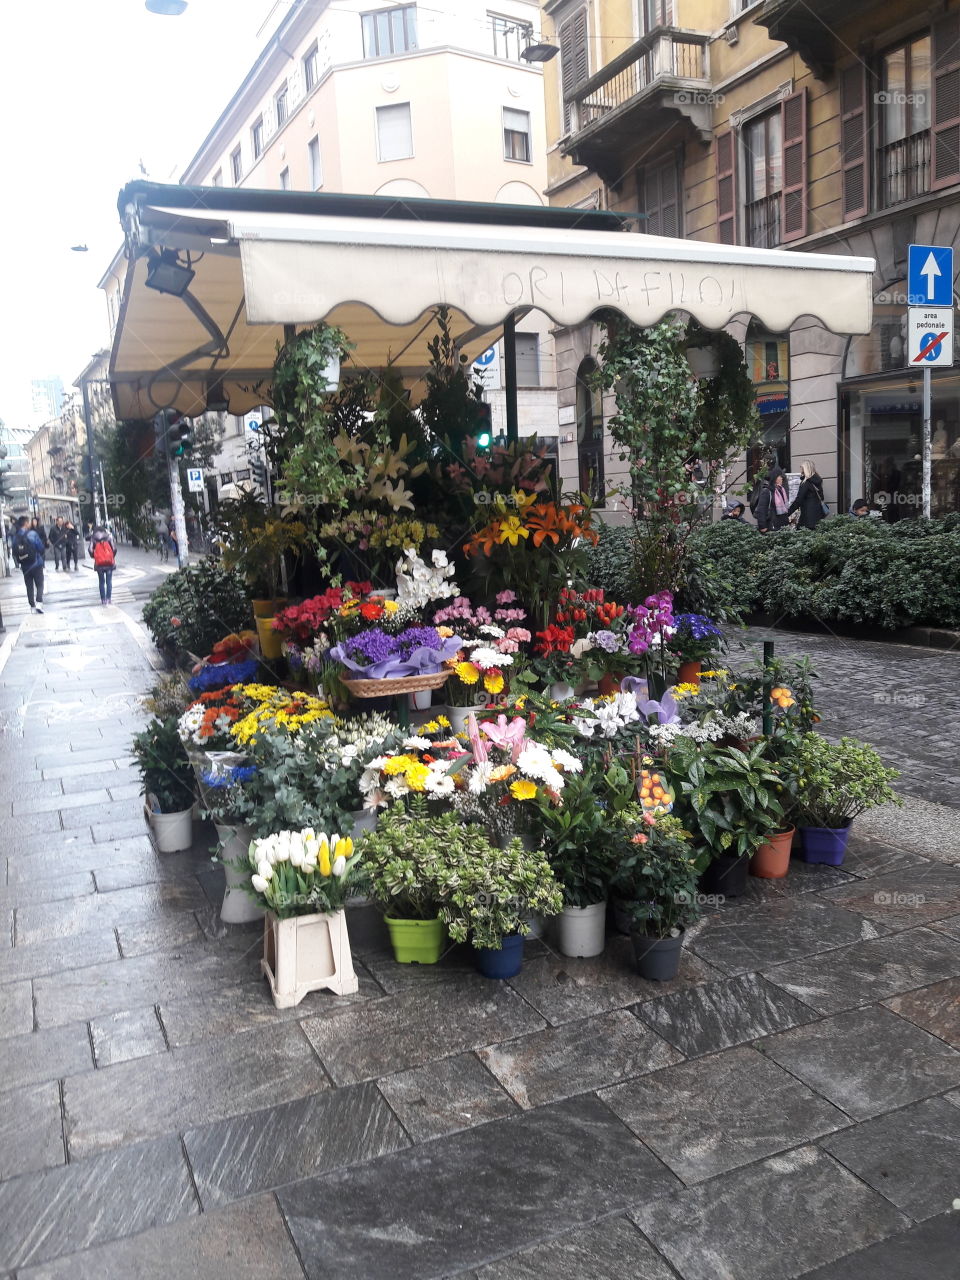 city flower kiosk